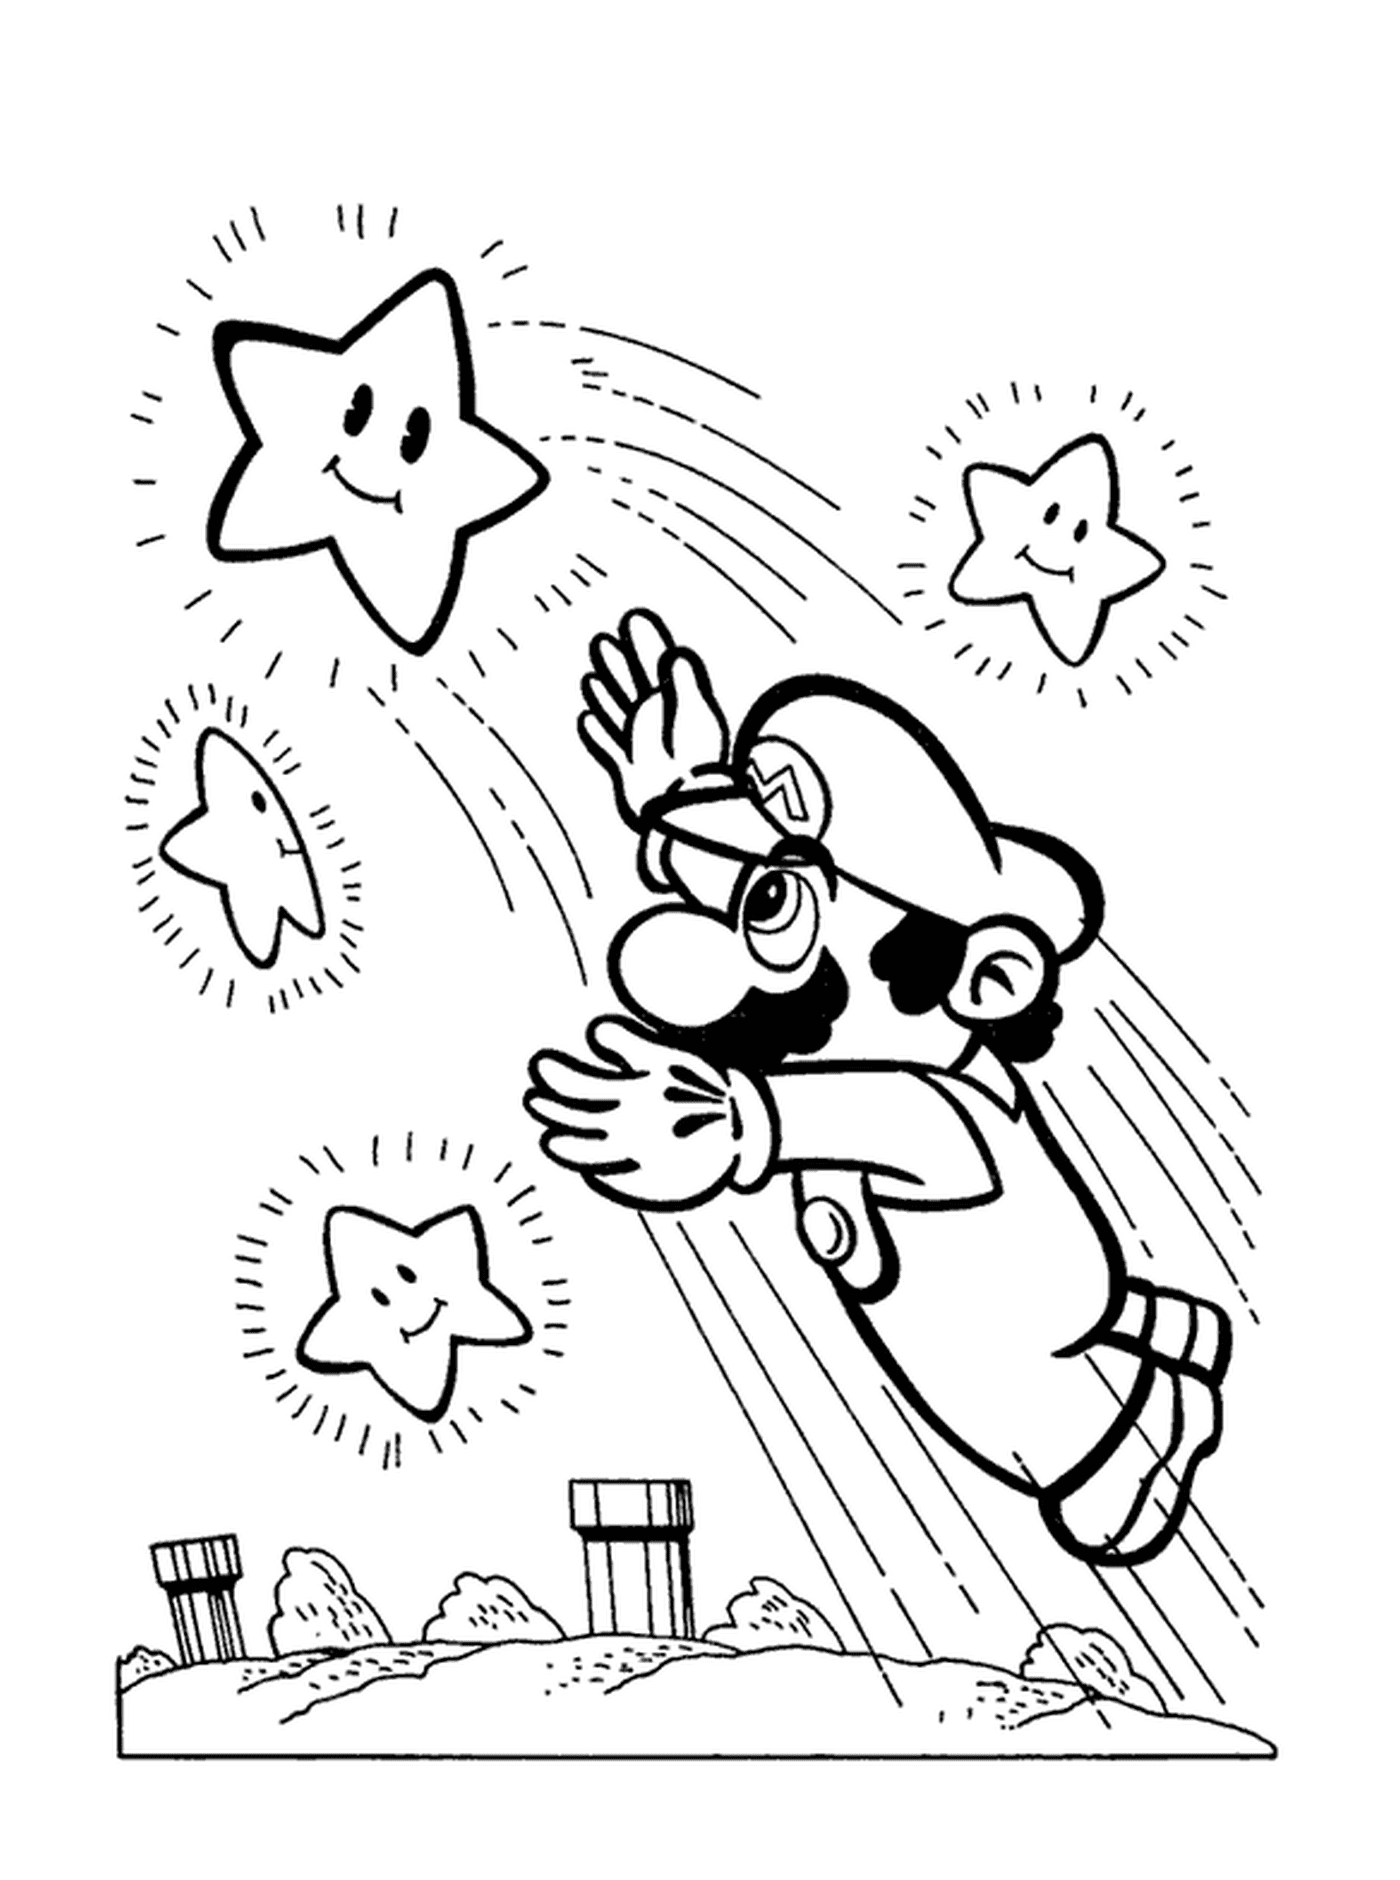  Mario agarra una estrella brillante 